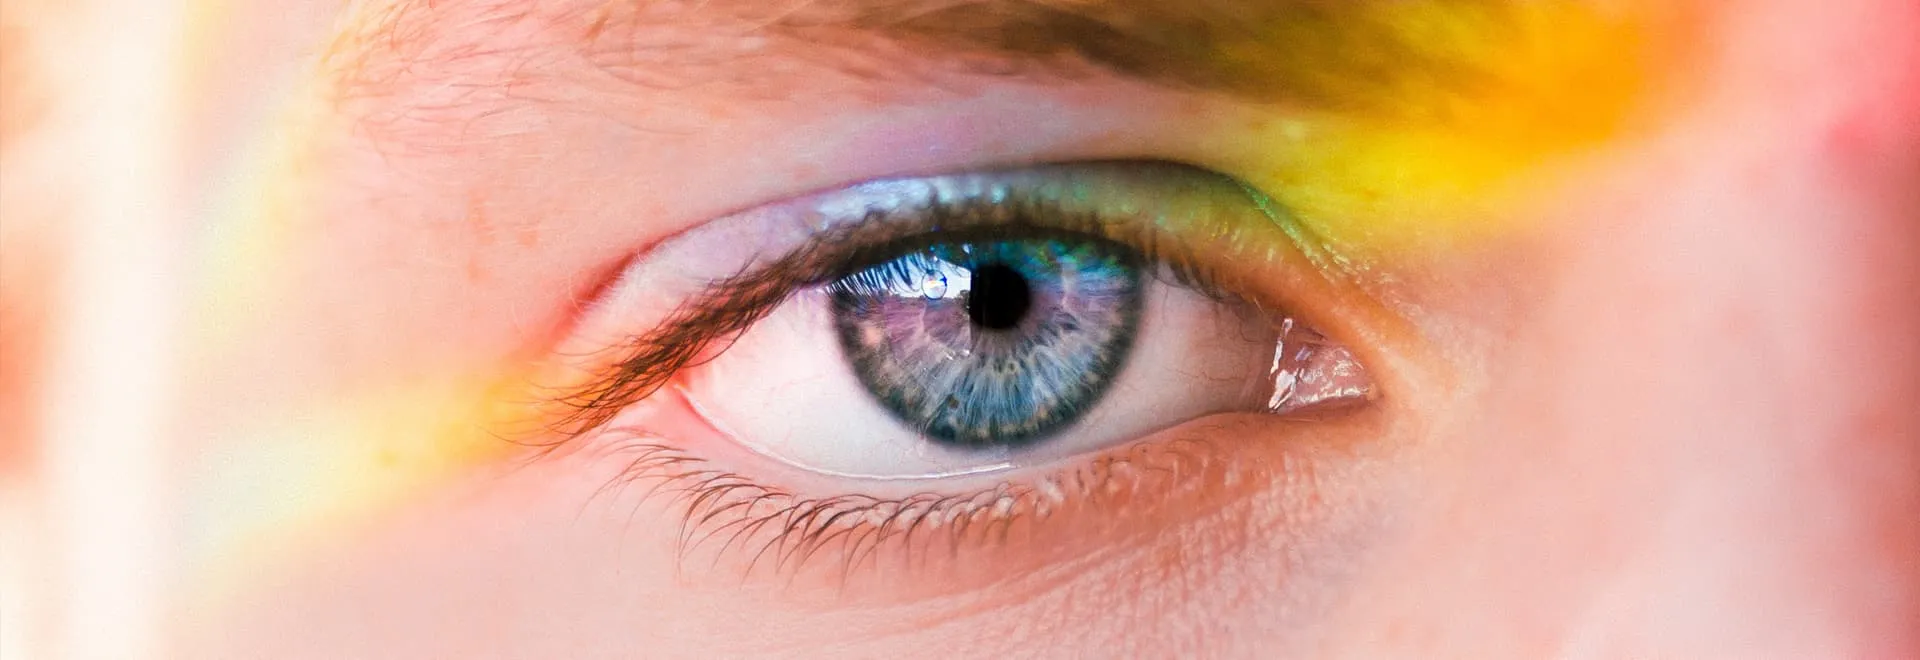 Nahaufnahme von einem Auge mit blauer Iris.